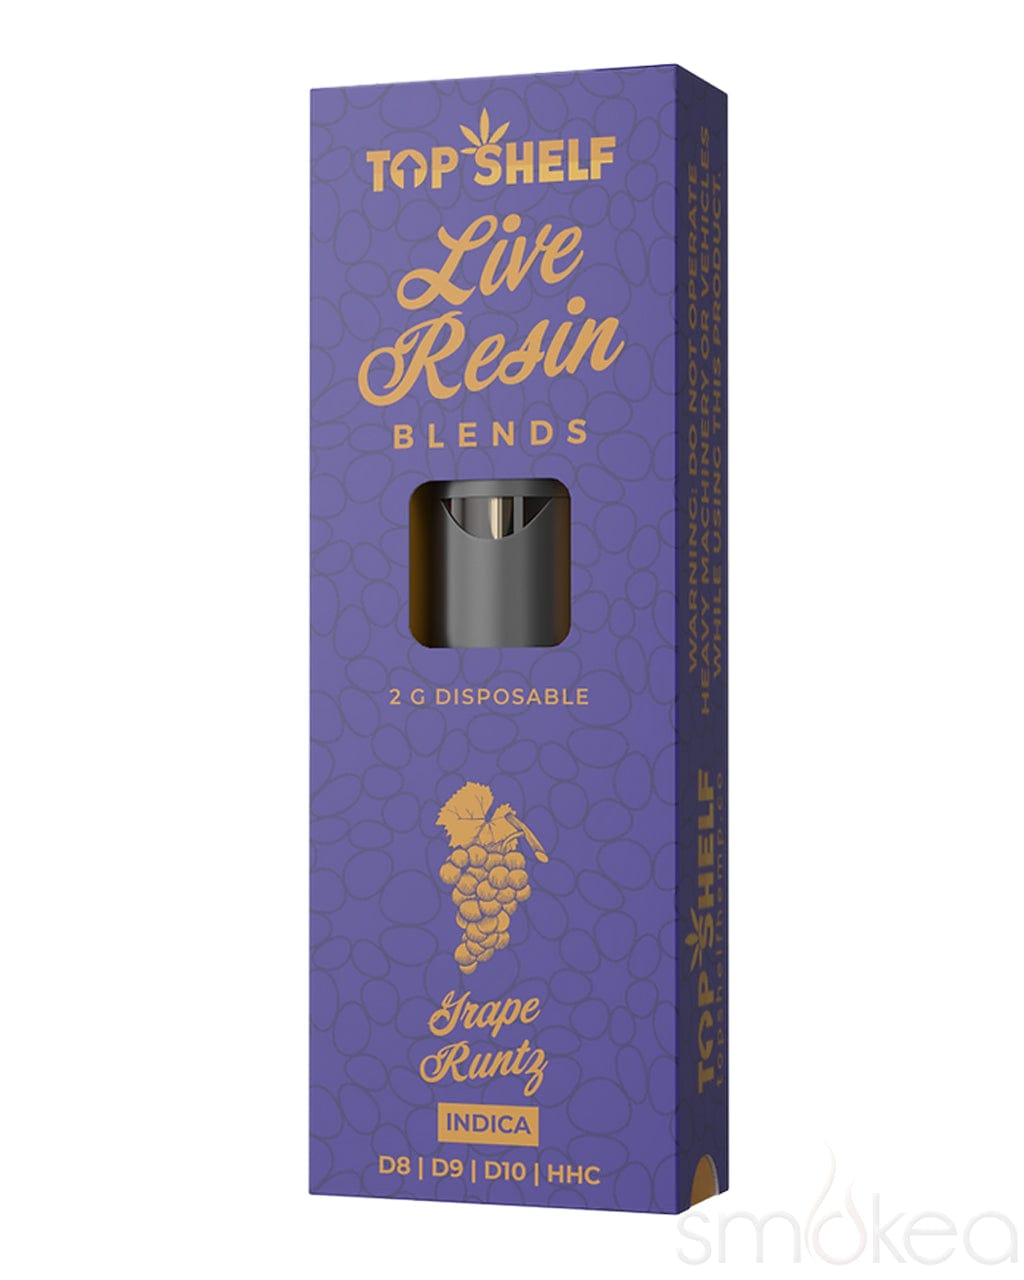 Top Shelf Hemp 2g Live Resin Blends Disposable Vape - Grape Runtz